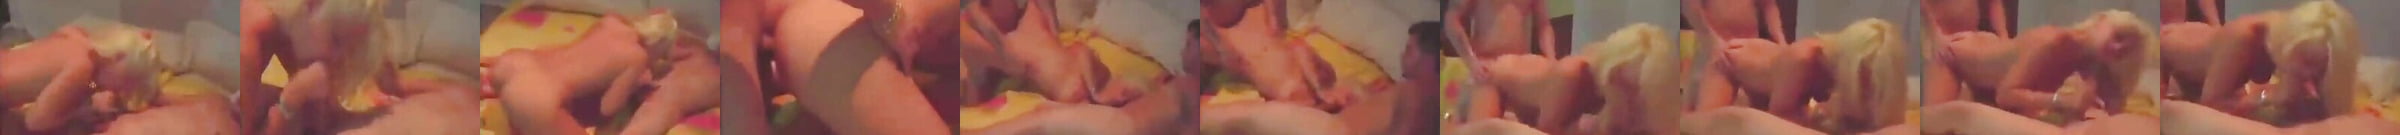 Bam Margera And Jenn Rivel Sex Tape Free Porn Fa Xhamster Xhamster 5074